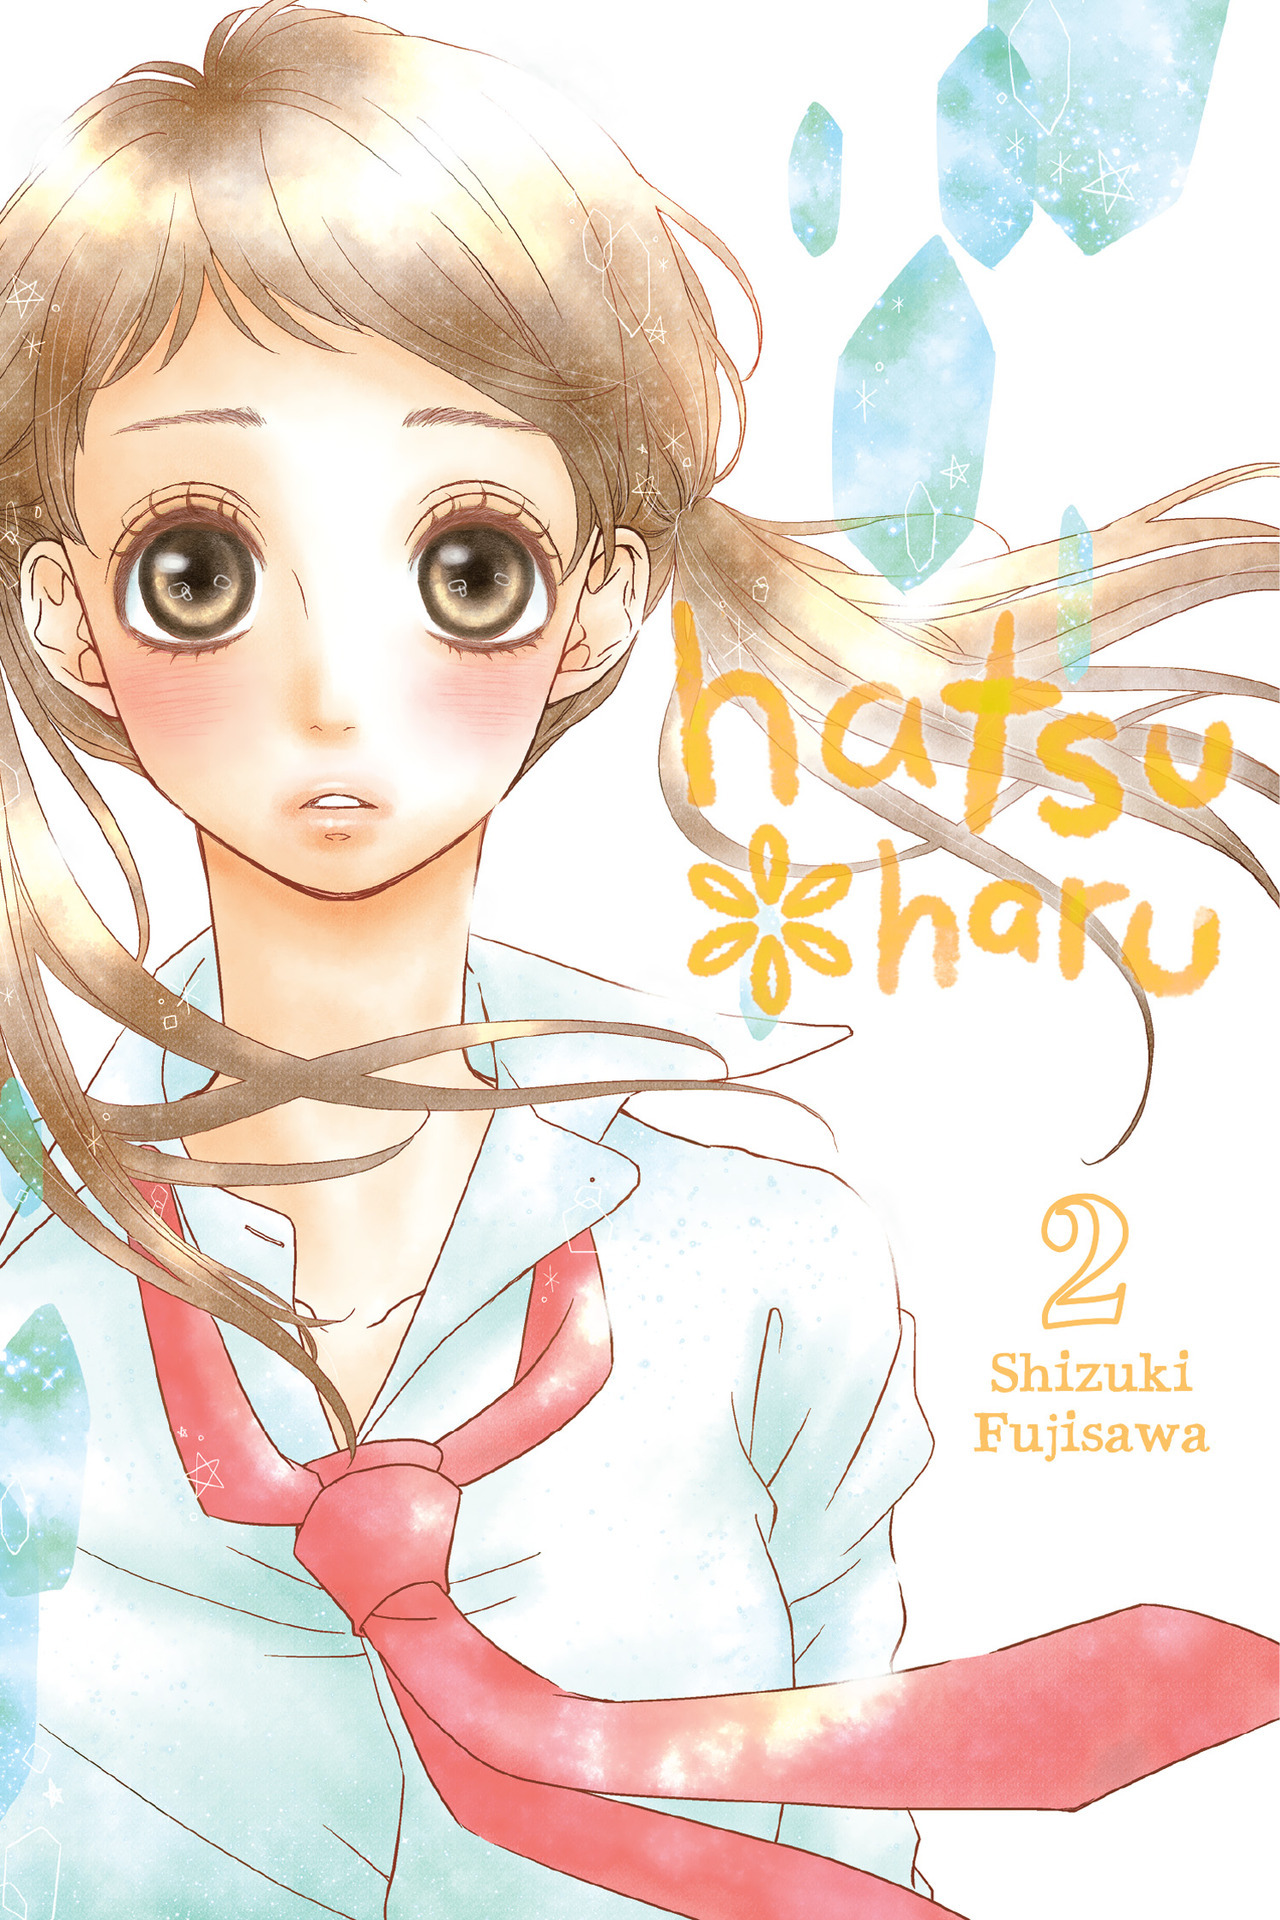 Hatsu Haru - Volume 2 | Shizuki Fujisawa